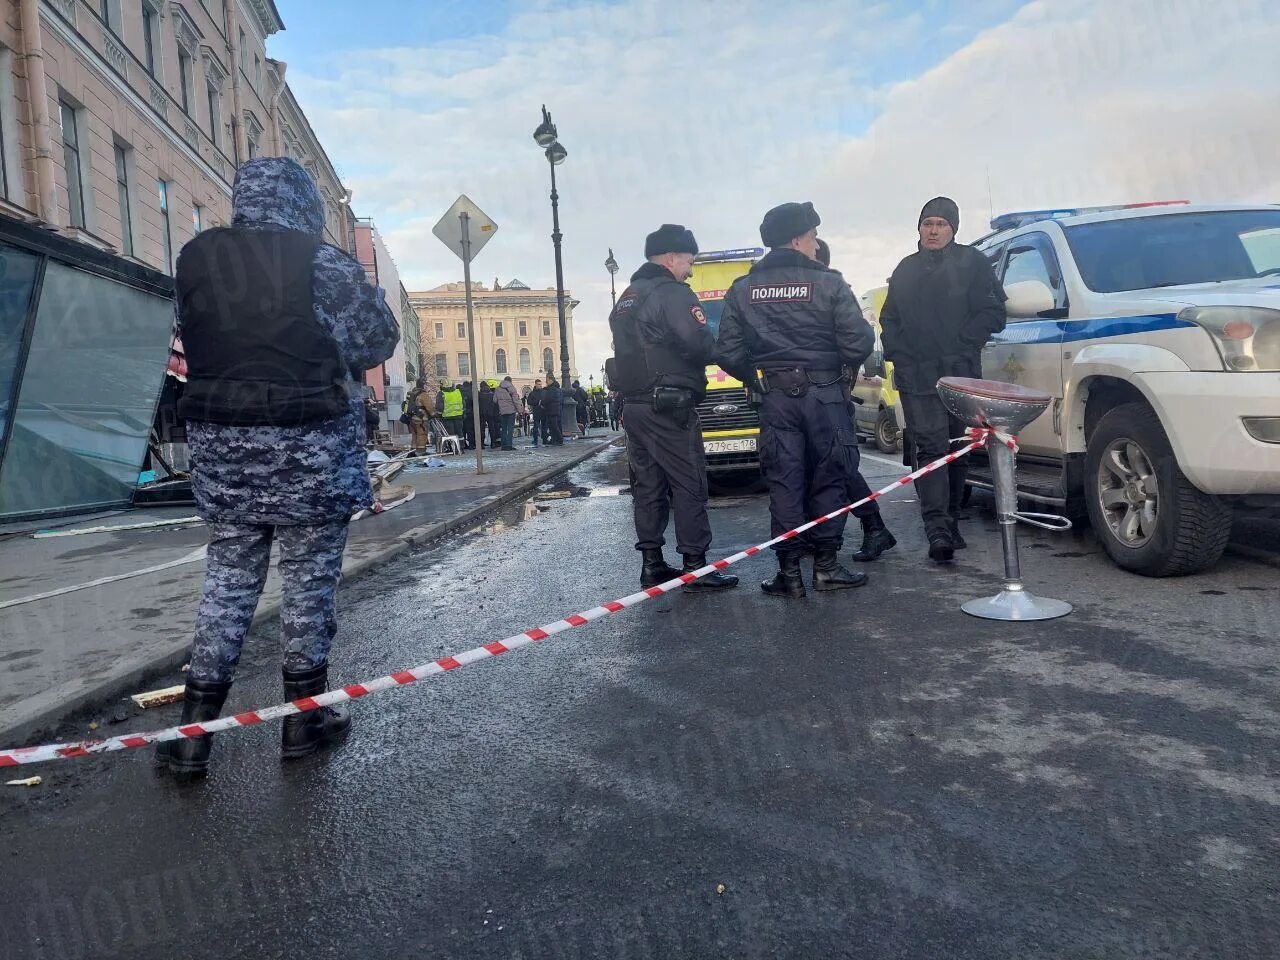 Полицейские Санкт-Петербург. Питер сегодня. Теракт в кафе в Петербурге полиция.